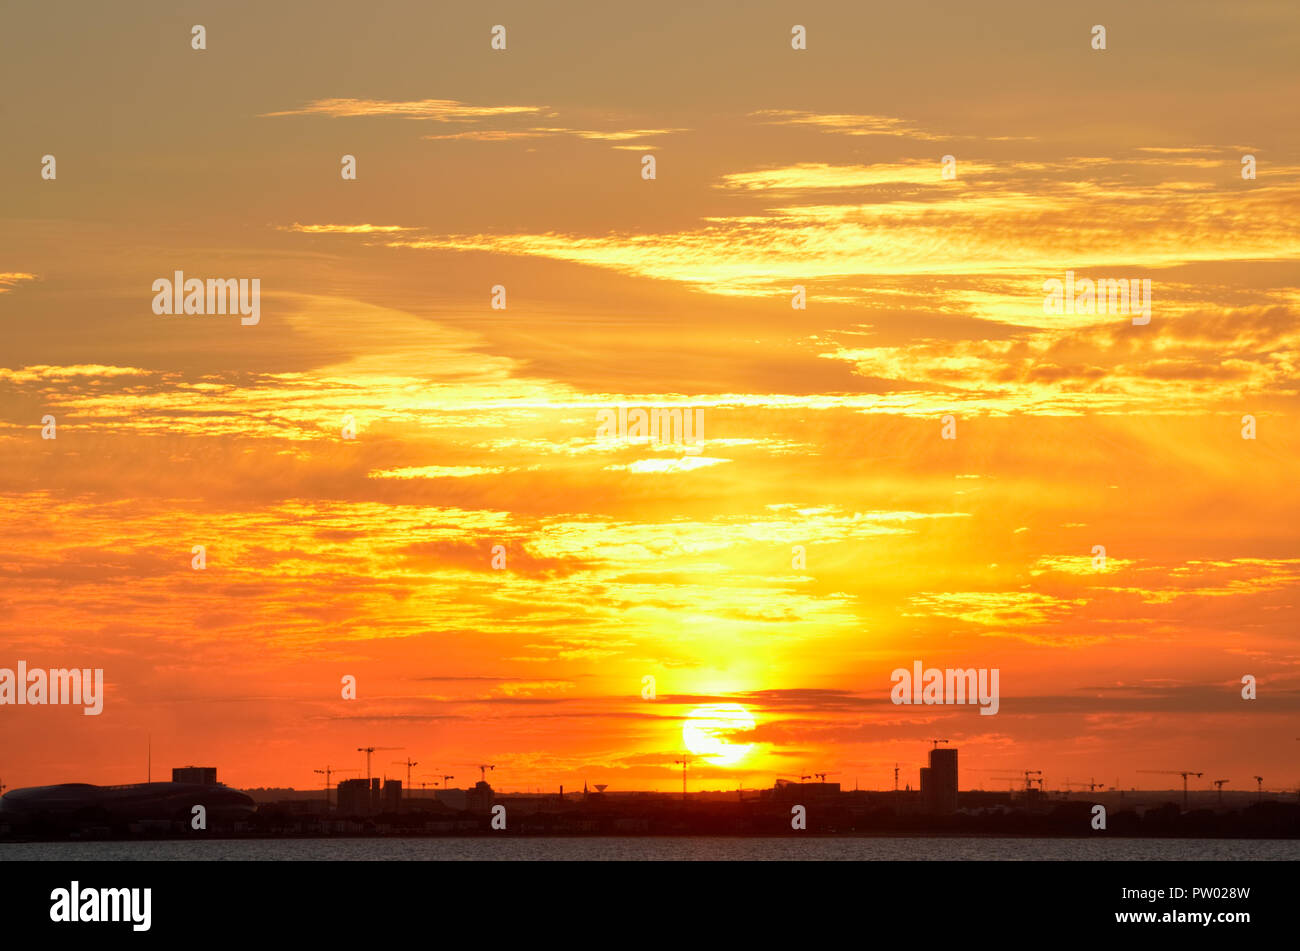 Impostazione sun creando vibrante golden e sfumature di colore arancione su Dublino dello skyline della città,l'Irlanda.Fiery sky al tramonto. Foto Stock